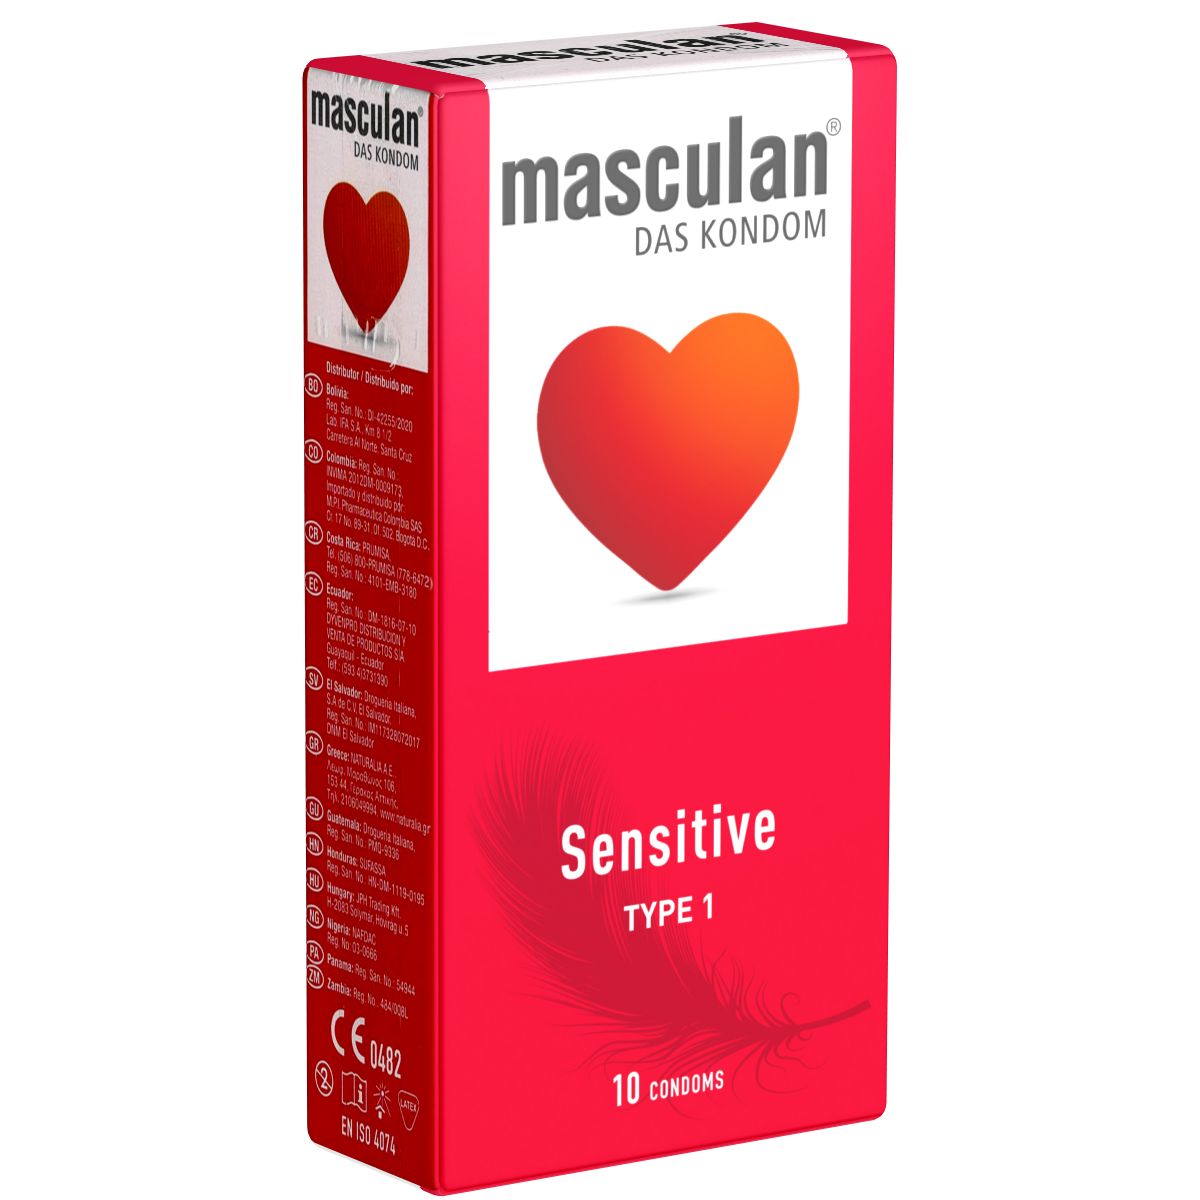 Masculan *Typ 1* (sensitive) zarte rosa Kondome für sinnliche Momente